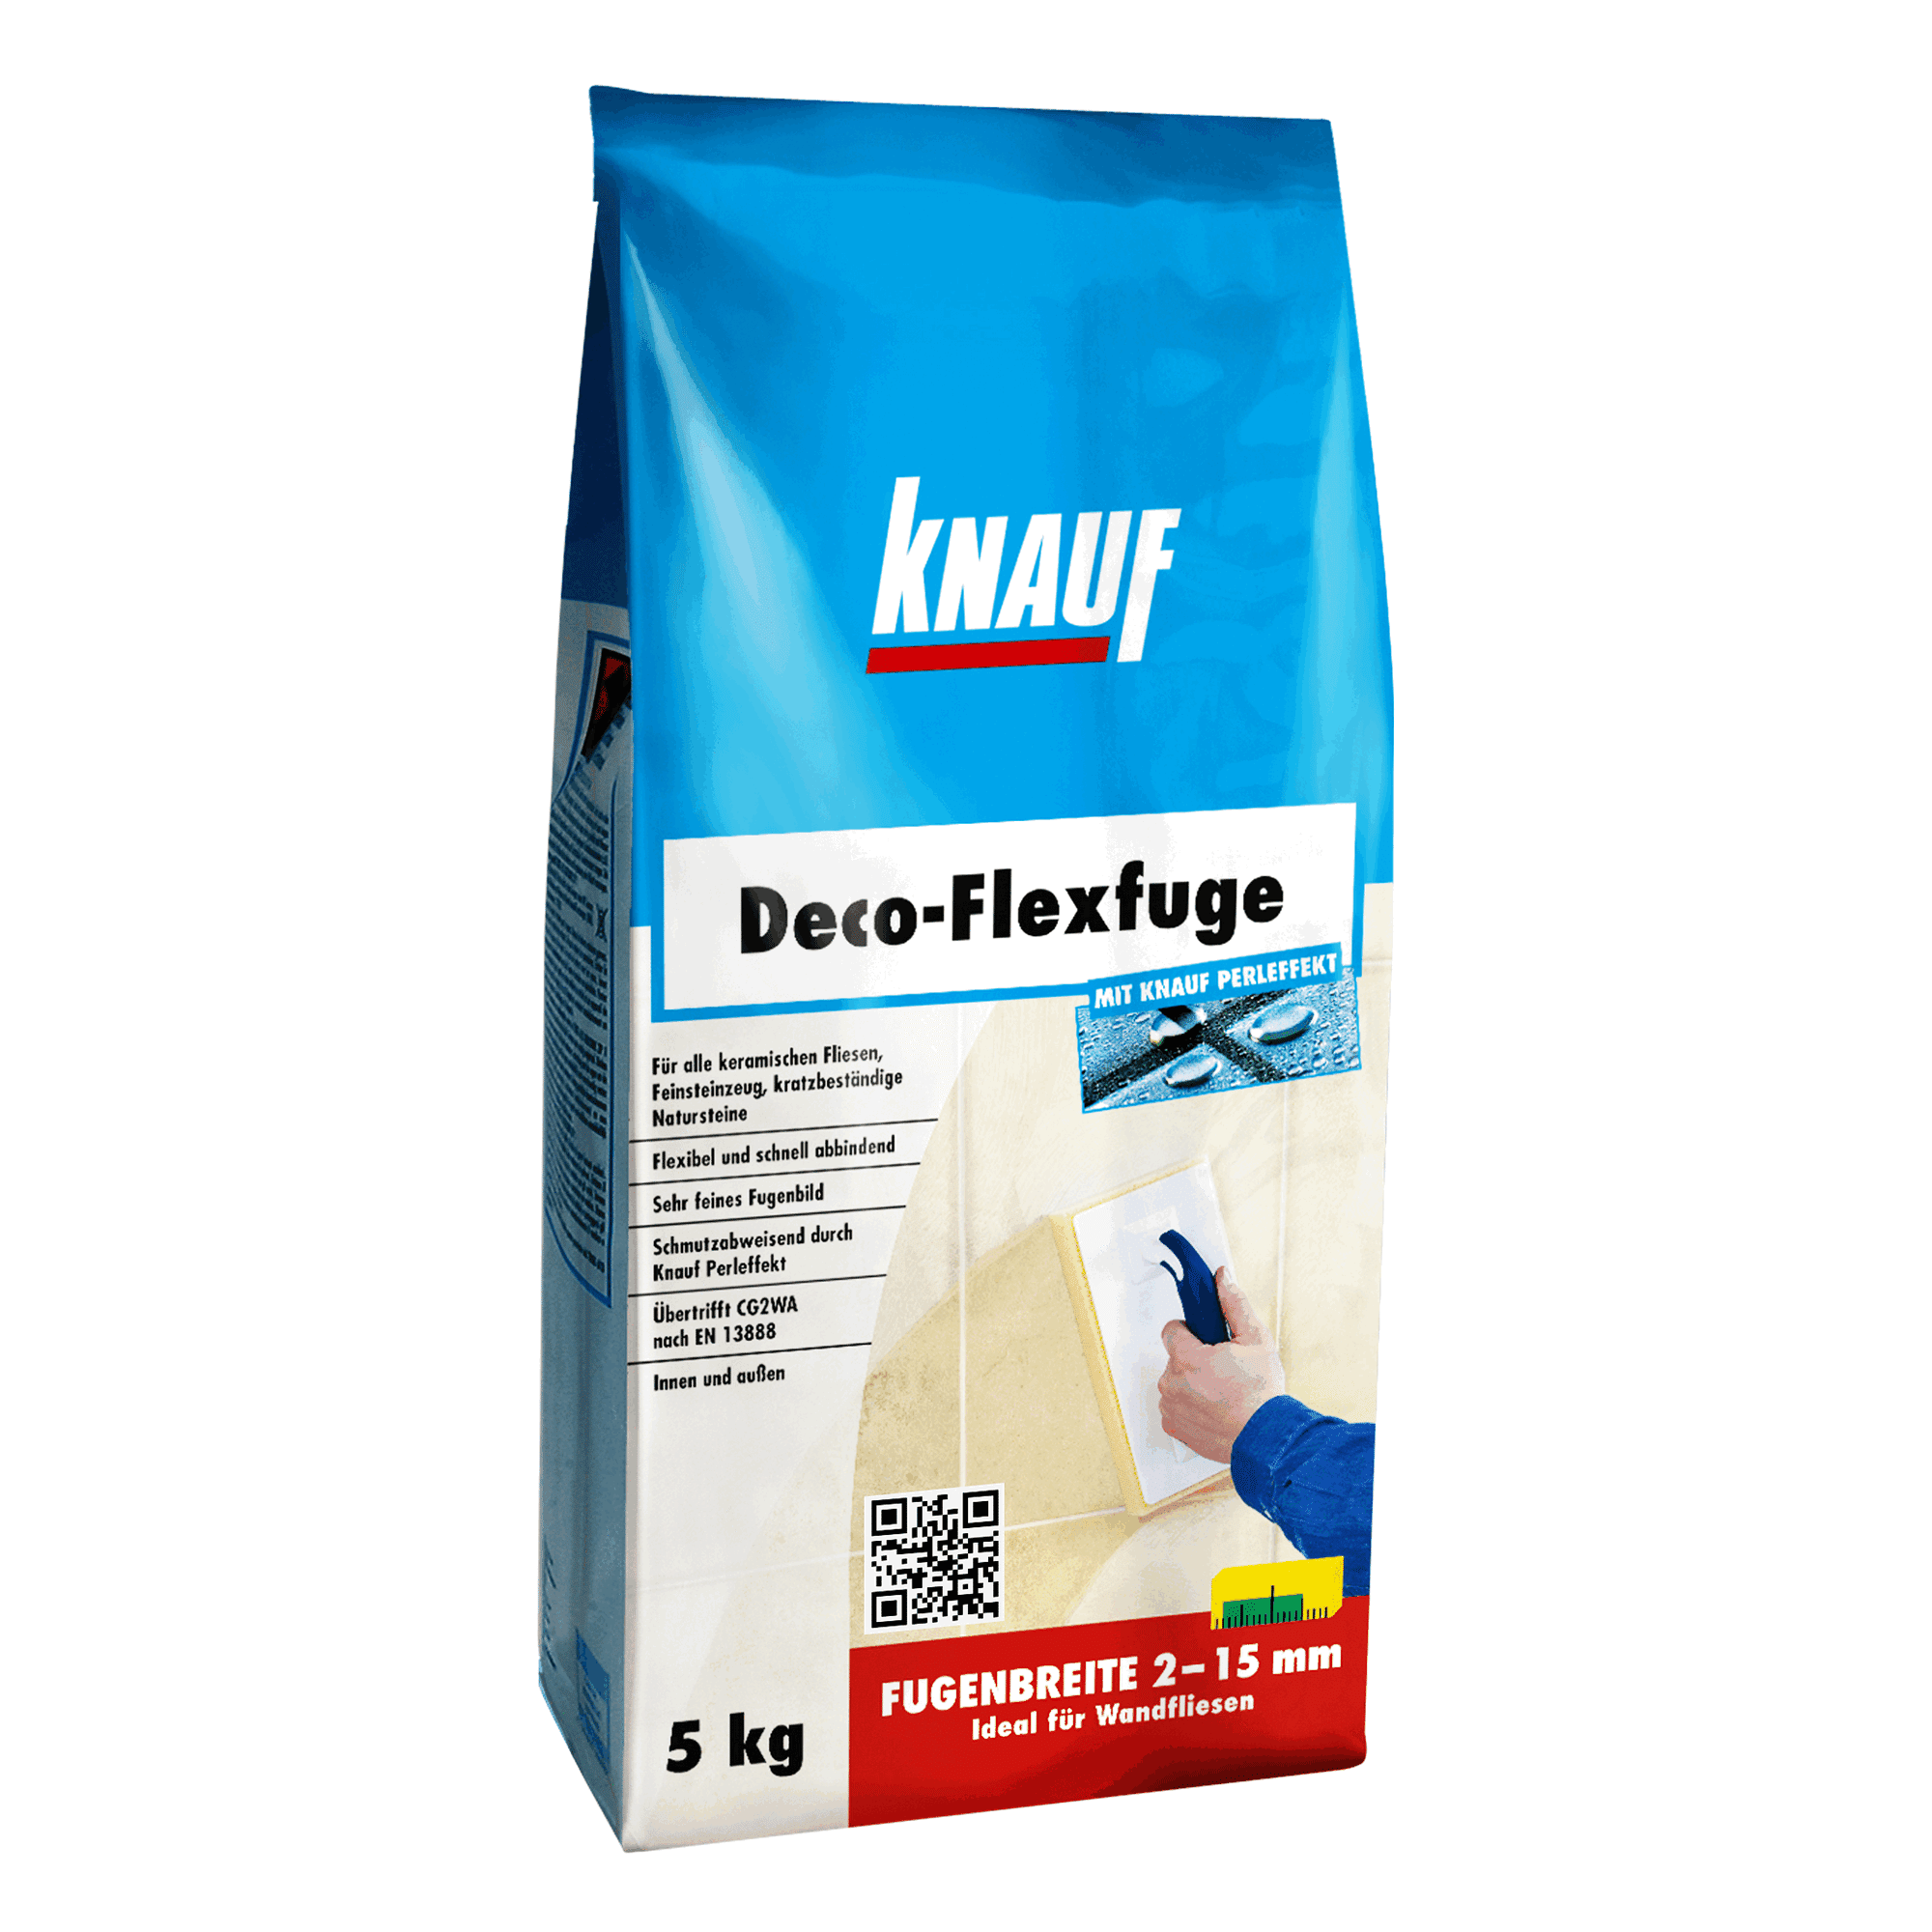 Fugenmörtel "Deco-Flexfuge" manhattan 5 kg + product picture